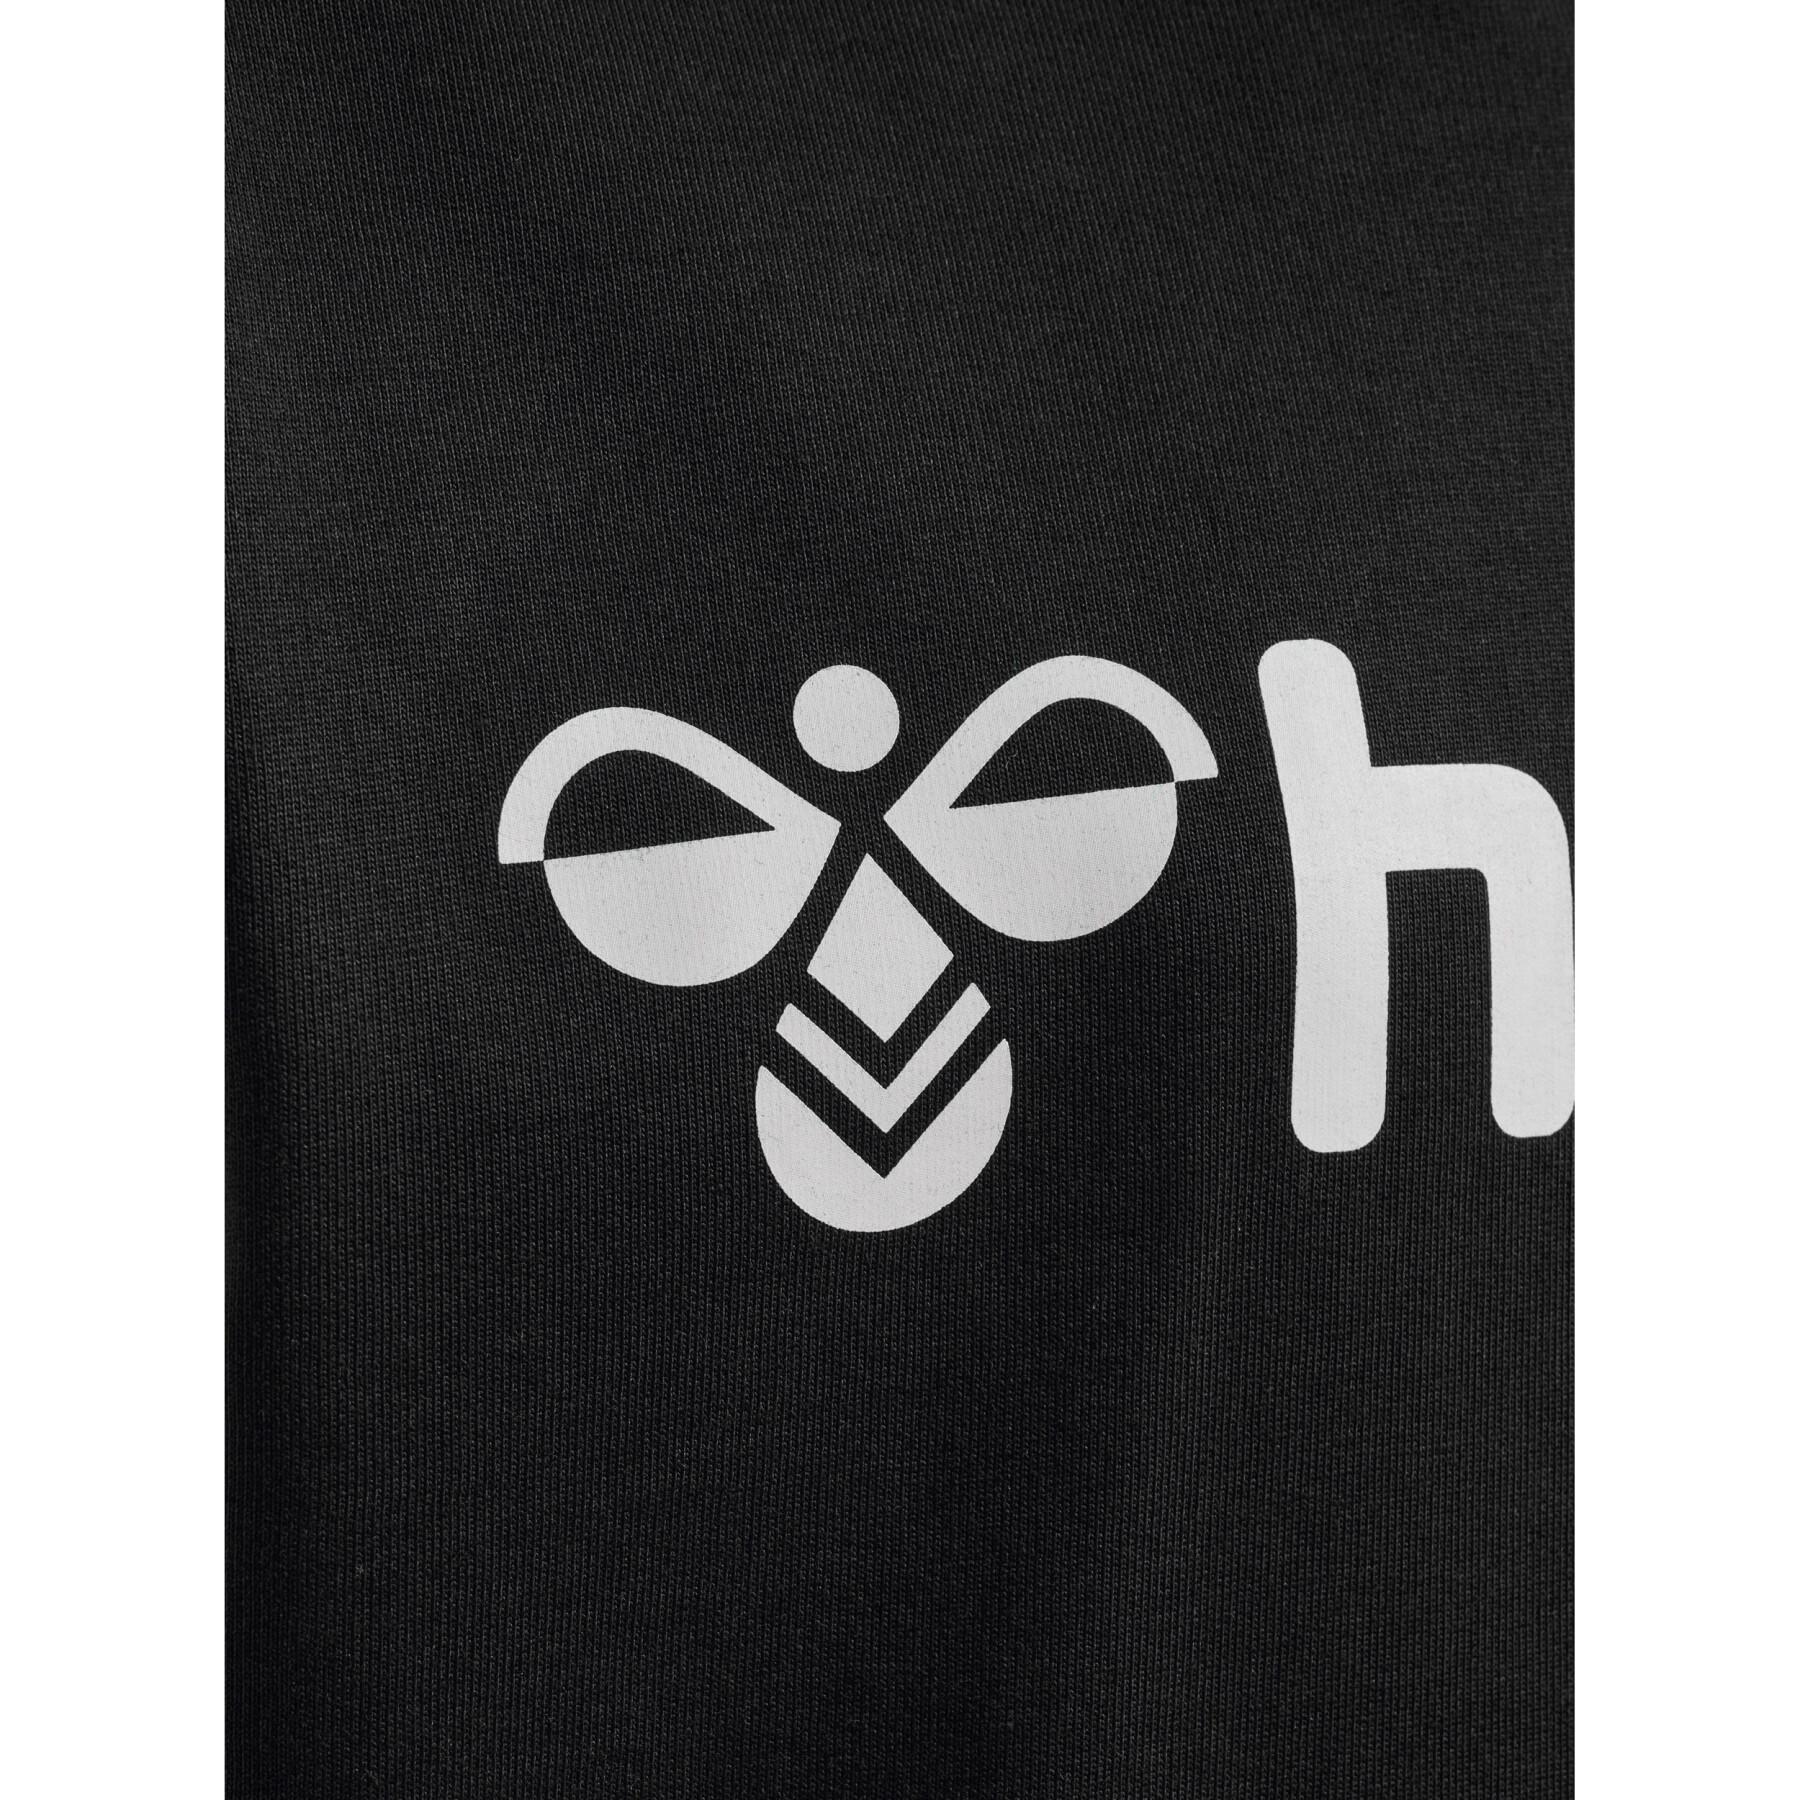 Kinder-Kapuzenpullover Hummel Go 2.0 Logo